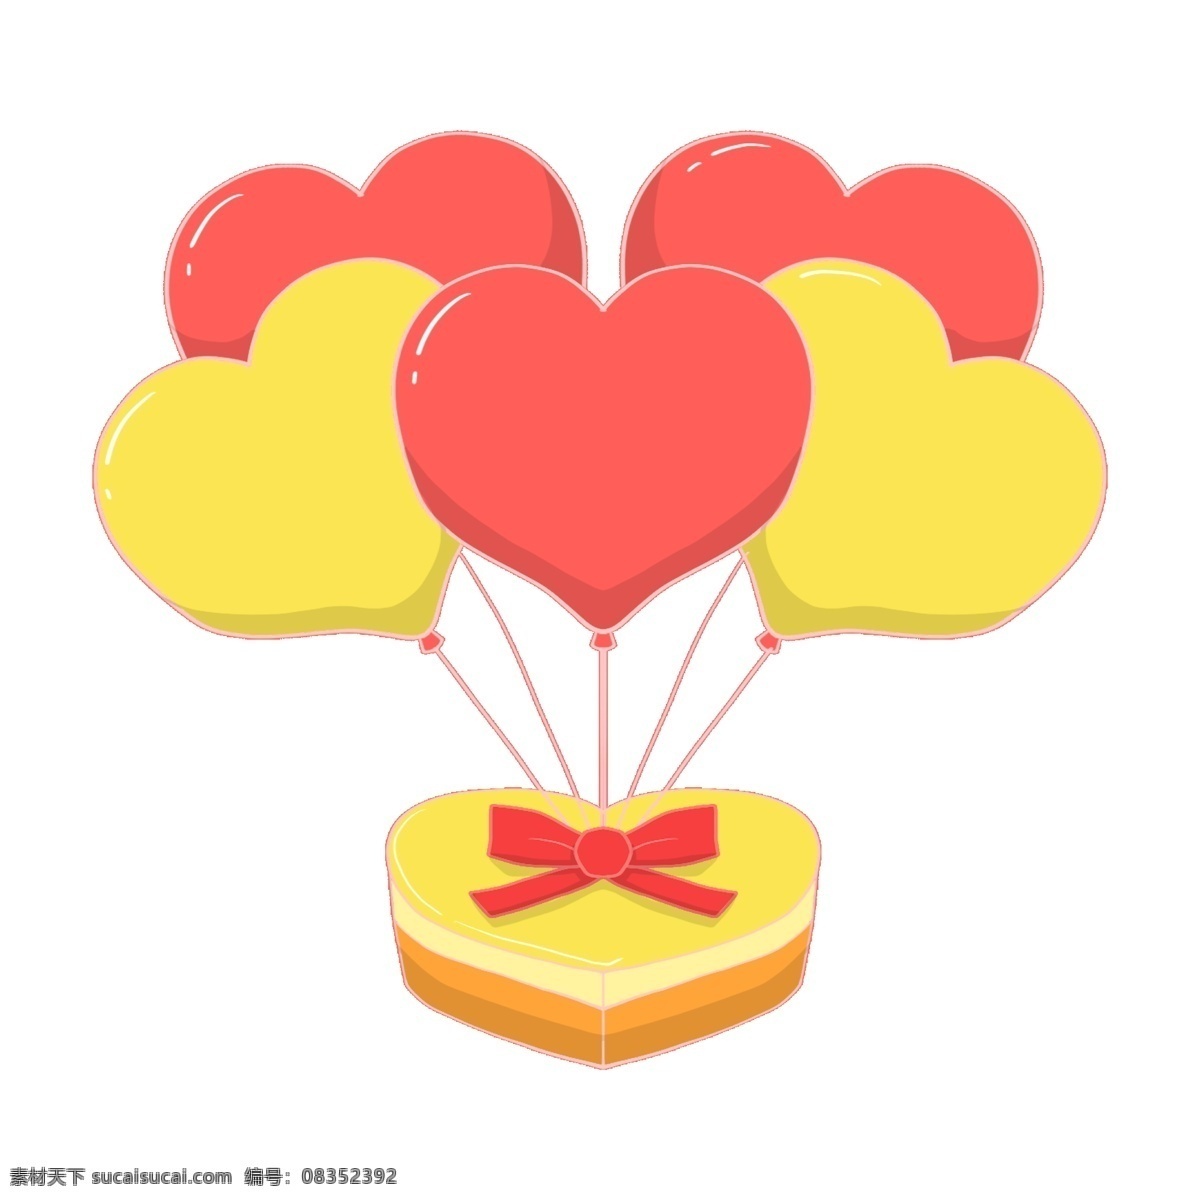 手绘 爱情 气球 礼物 插画 桃心气球 手绘气球 气球礼物 黄色 红色气球 爱情气球 礼物插画 桃心礼物盒